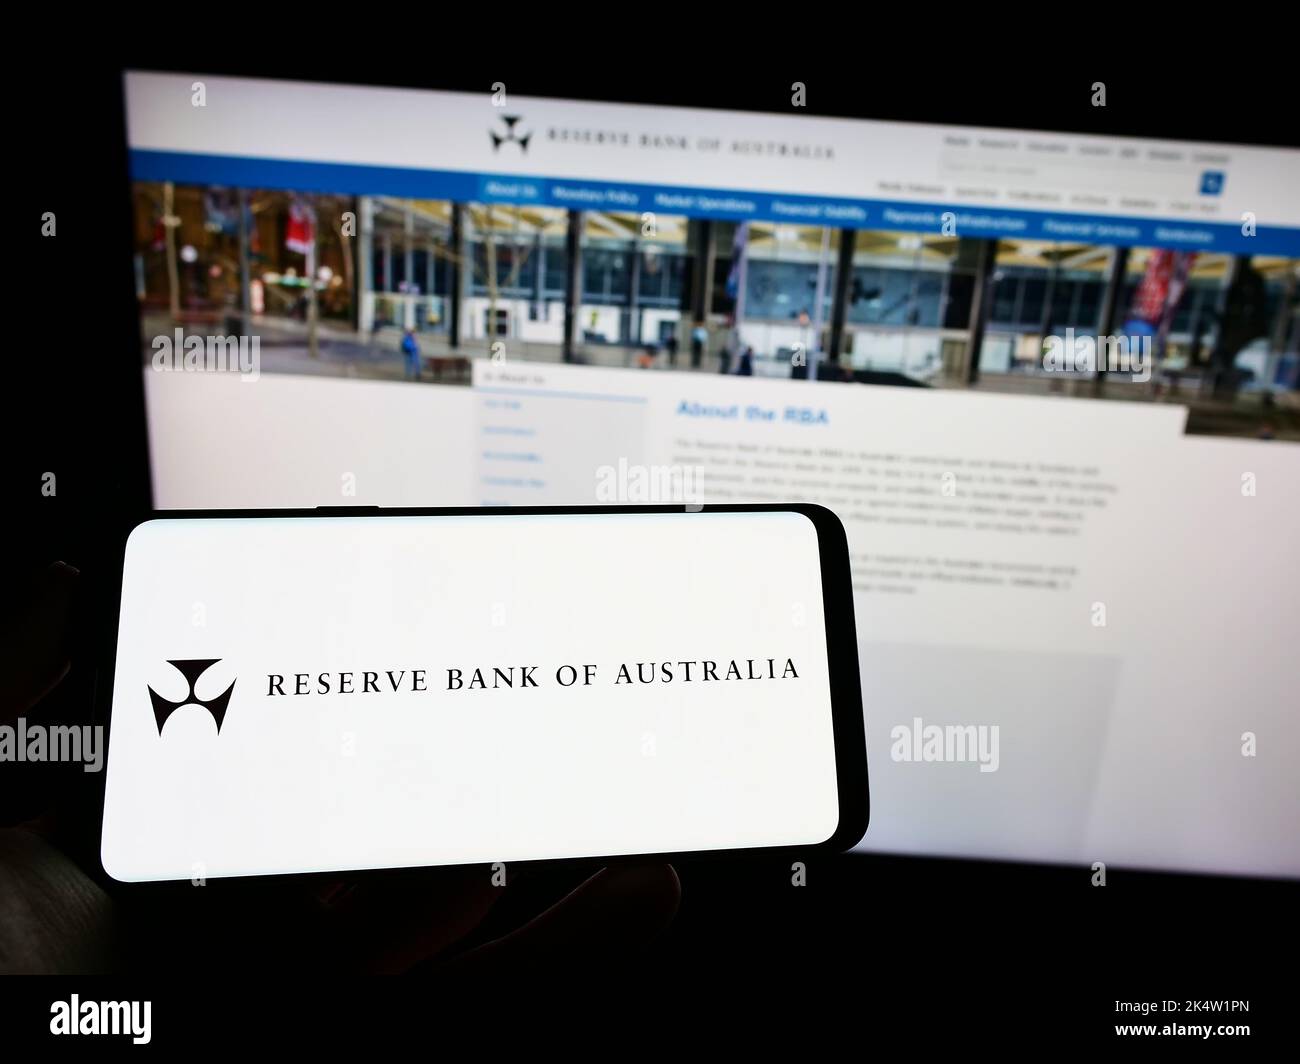 Persona che detiene un telefono cellulare con il logo dell'emittente Reserve Bank of Australia (RBA) sullo schermo di fronte alla pagina web. Messa a fuoco sul display del telefono. Foto Stock